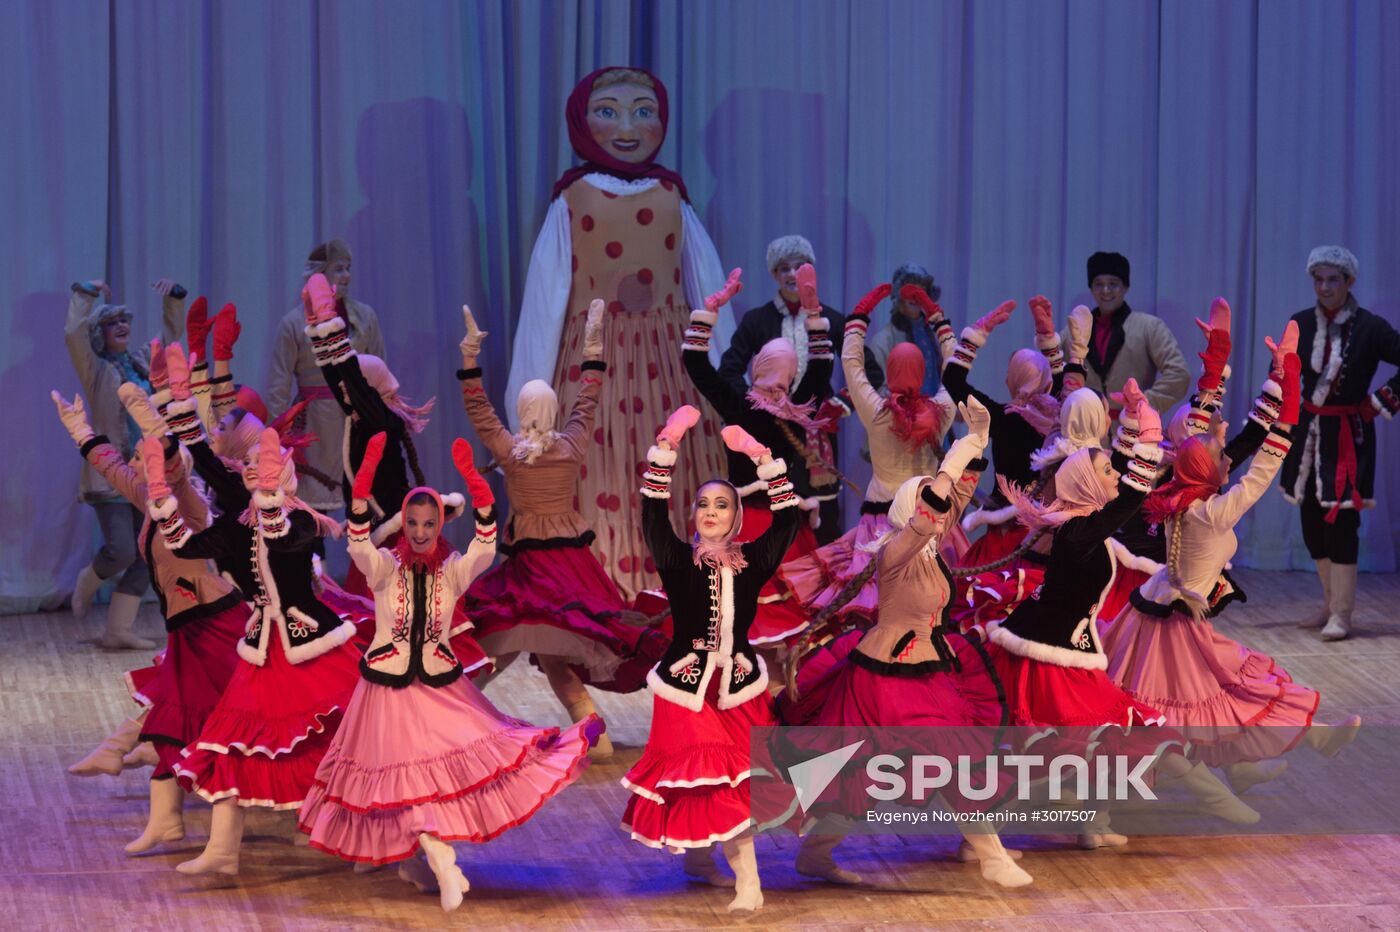 Nadezhda Babkina's Beryozka ensemble